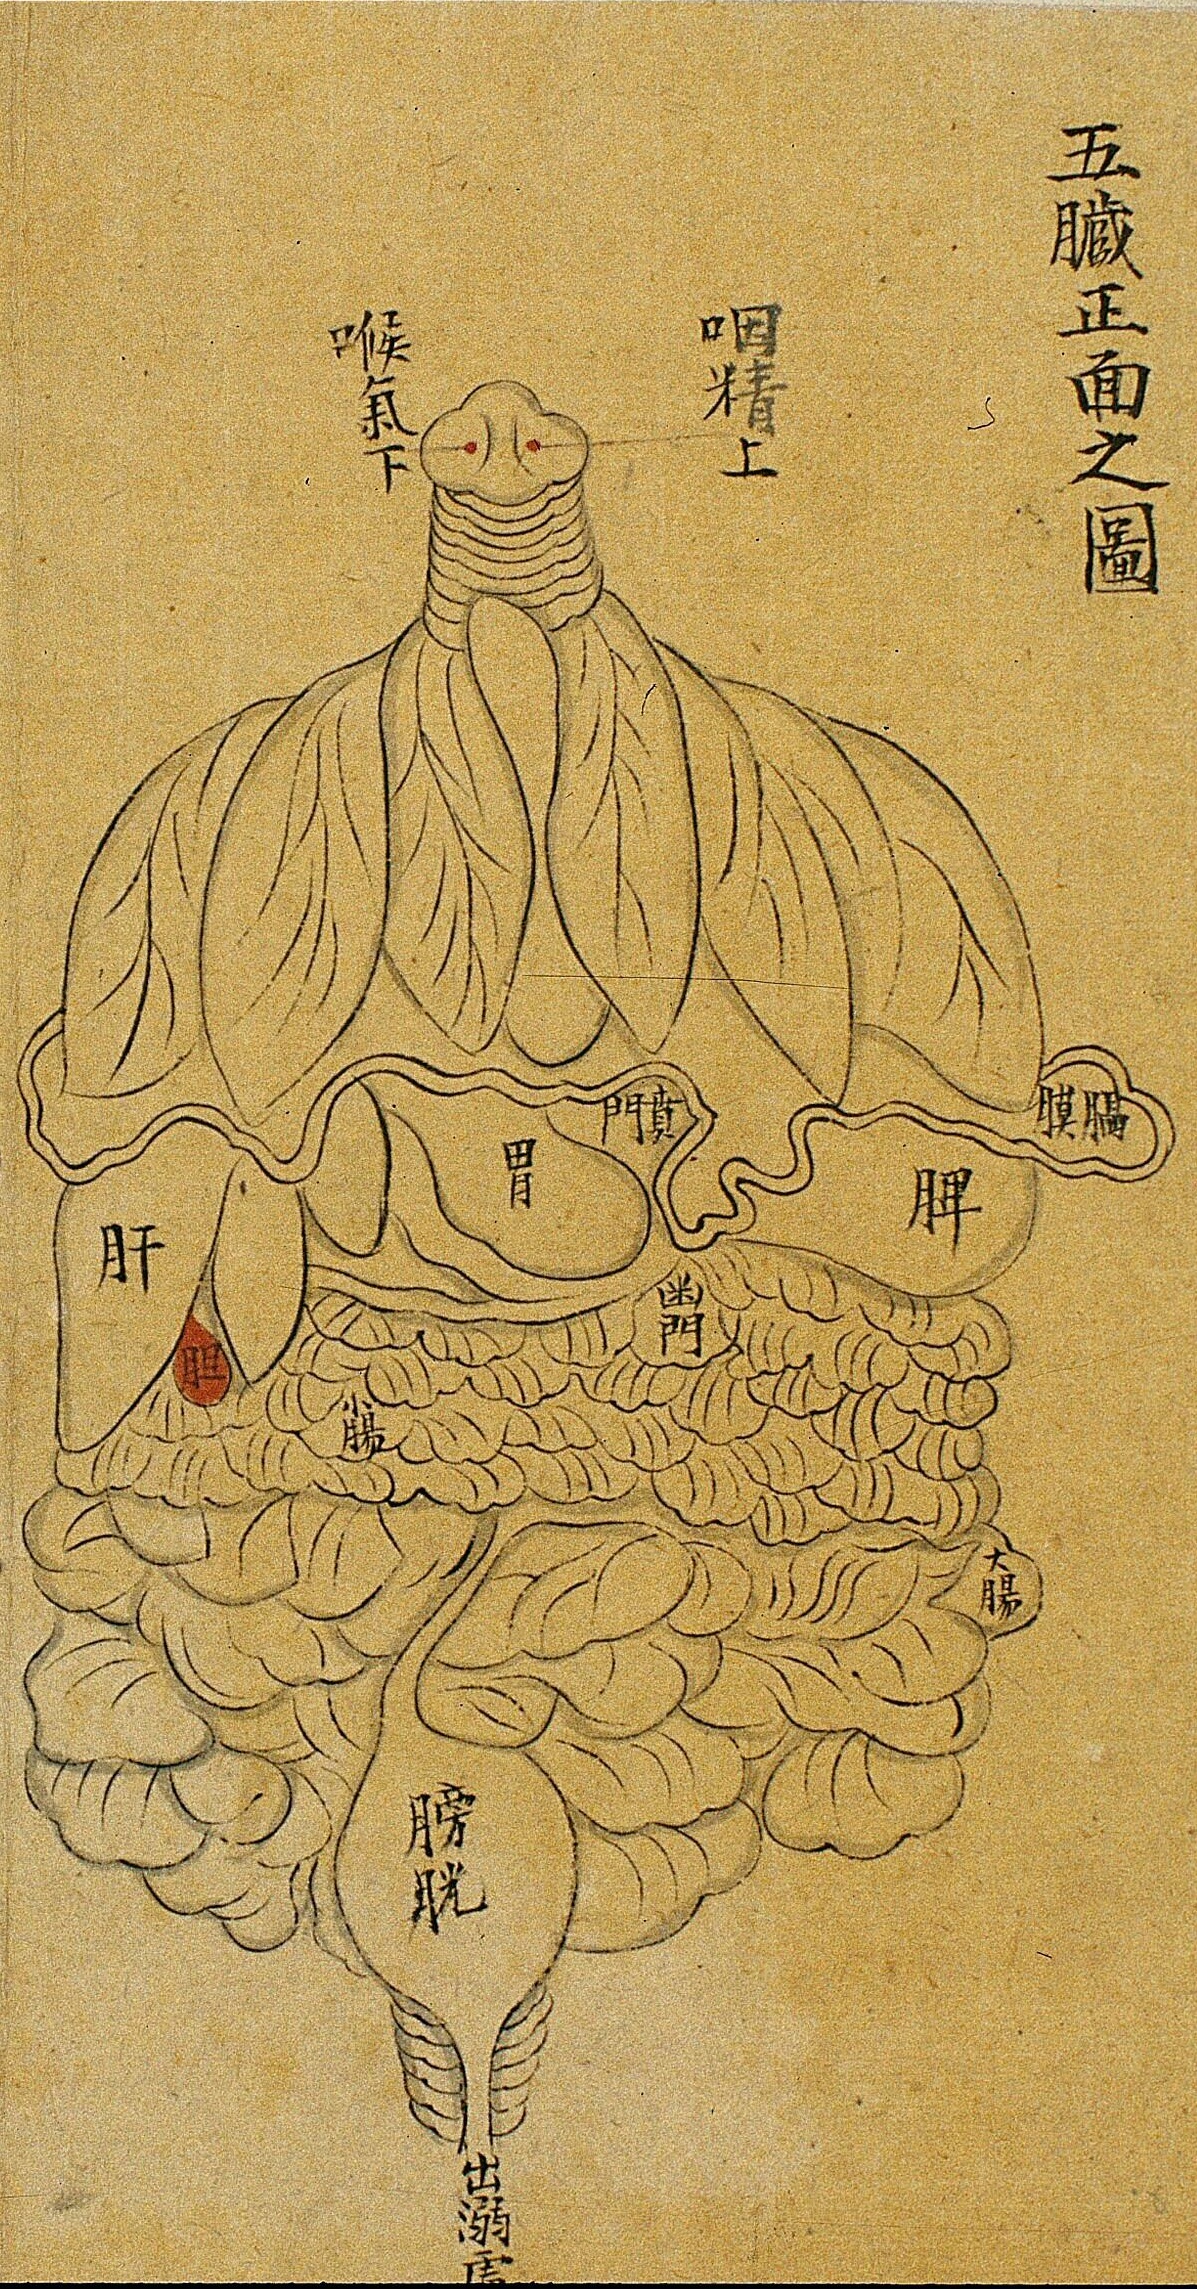 Chine - Dessin à l'encre d'un manuscrit de la période Qing (1644-1911). Ce dessin reproduirait des dessins de viscères du Xe ayant disparu.